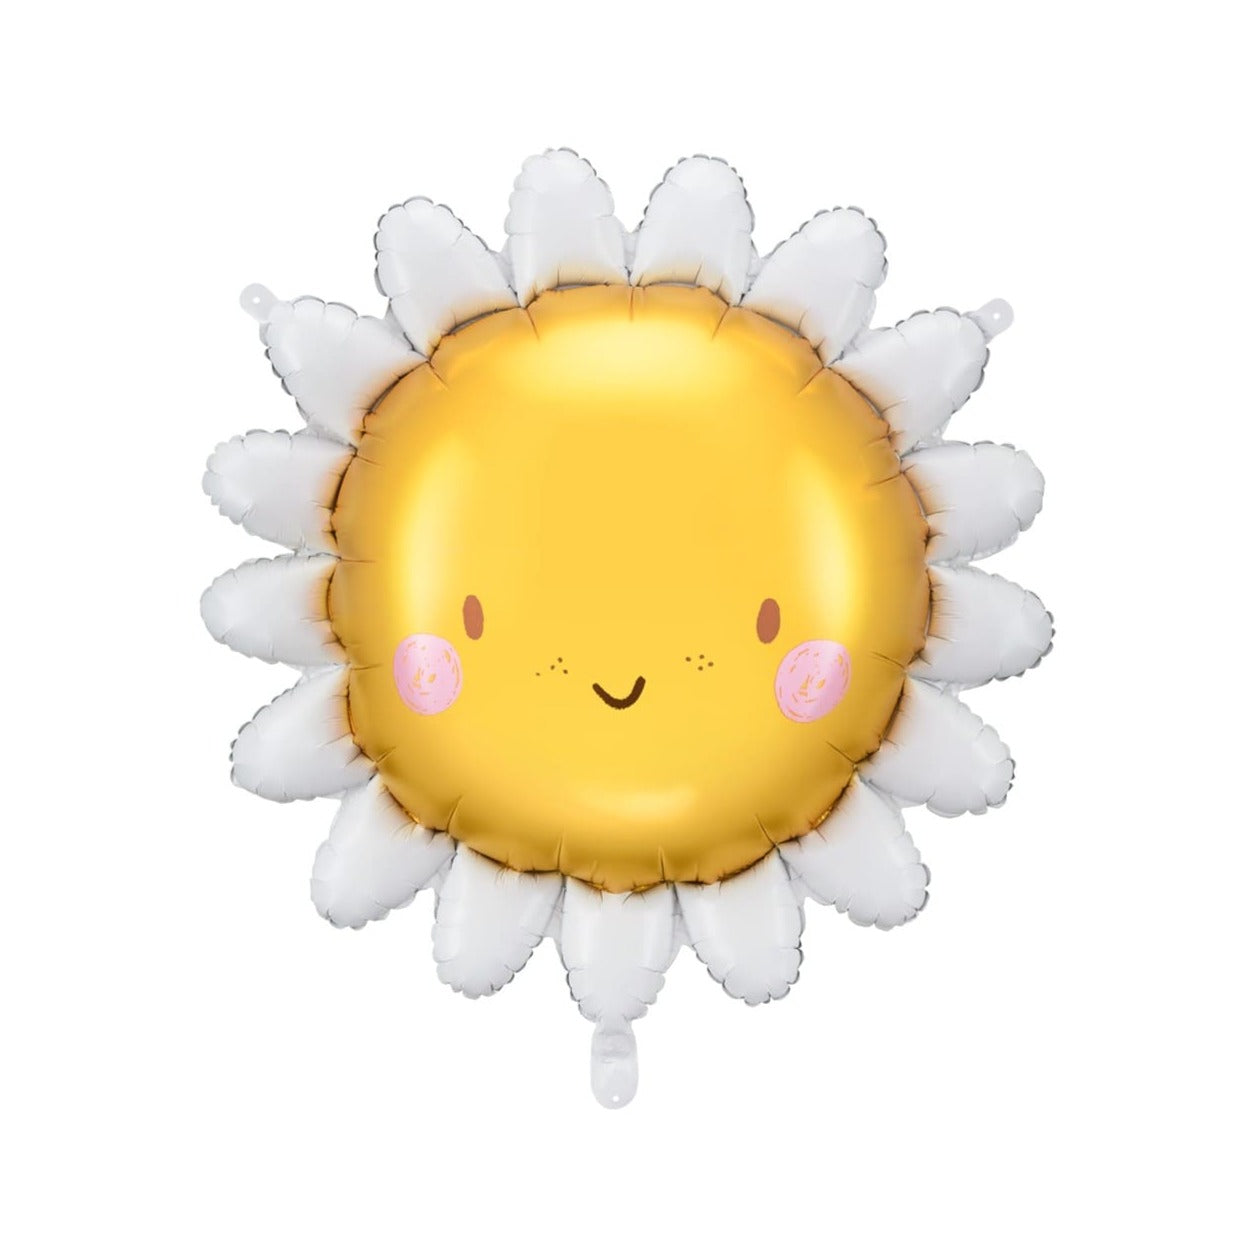 Cute Sun Balloon